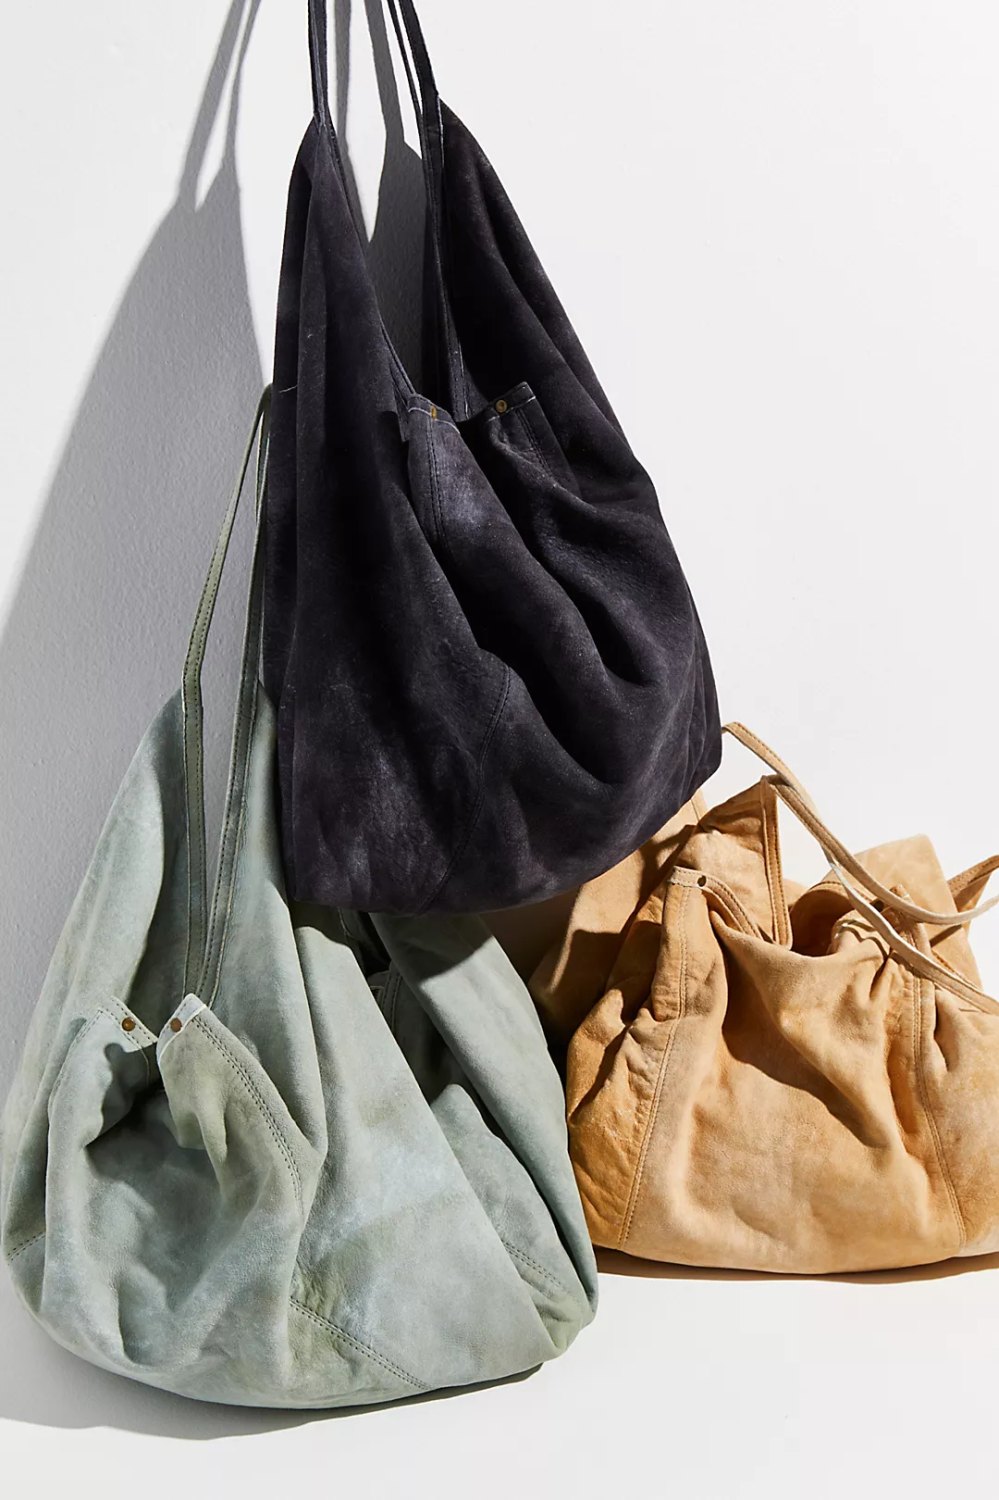 Boho Bag, Hobo Bags, Triangle Fabric Bag in Pink, Blue, Black, Green F Blue